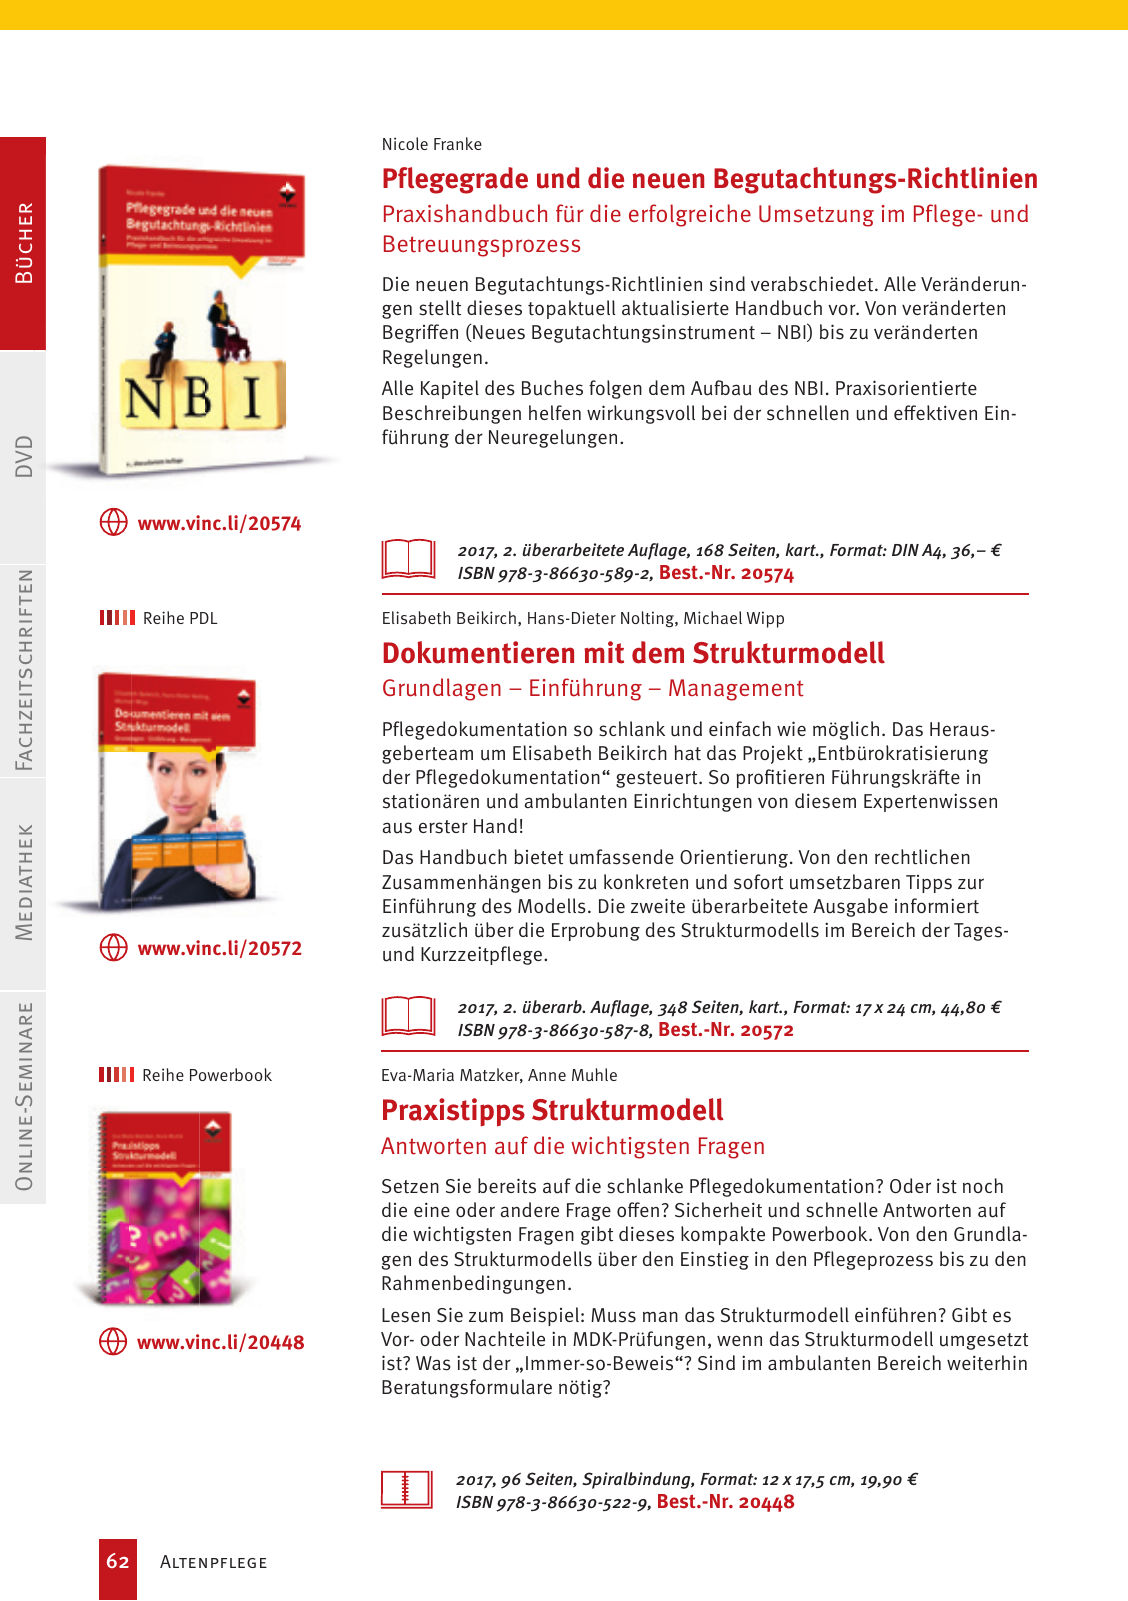 Vorschau Vincentz Verlagsprogramm 2020 Seite 62